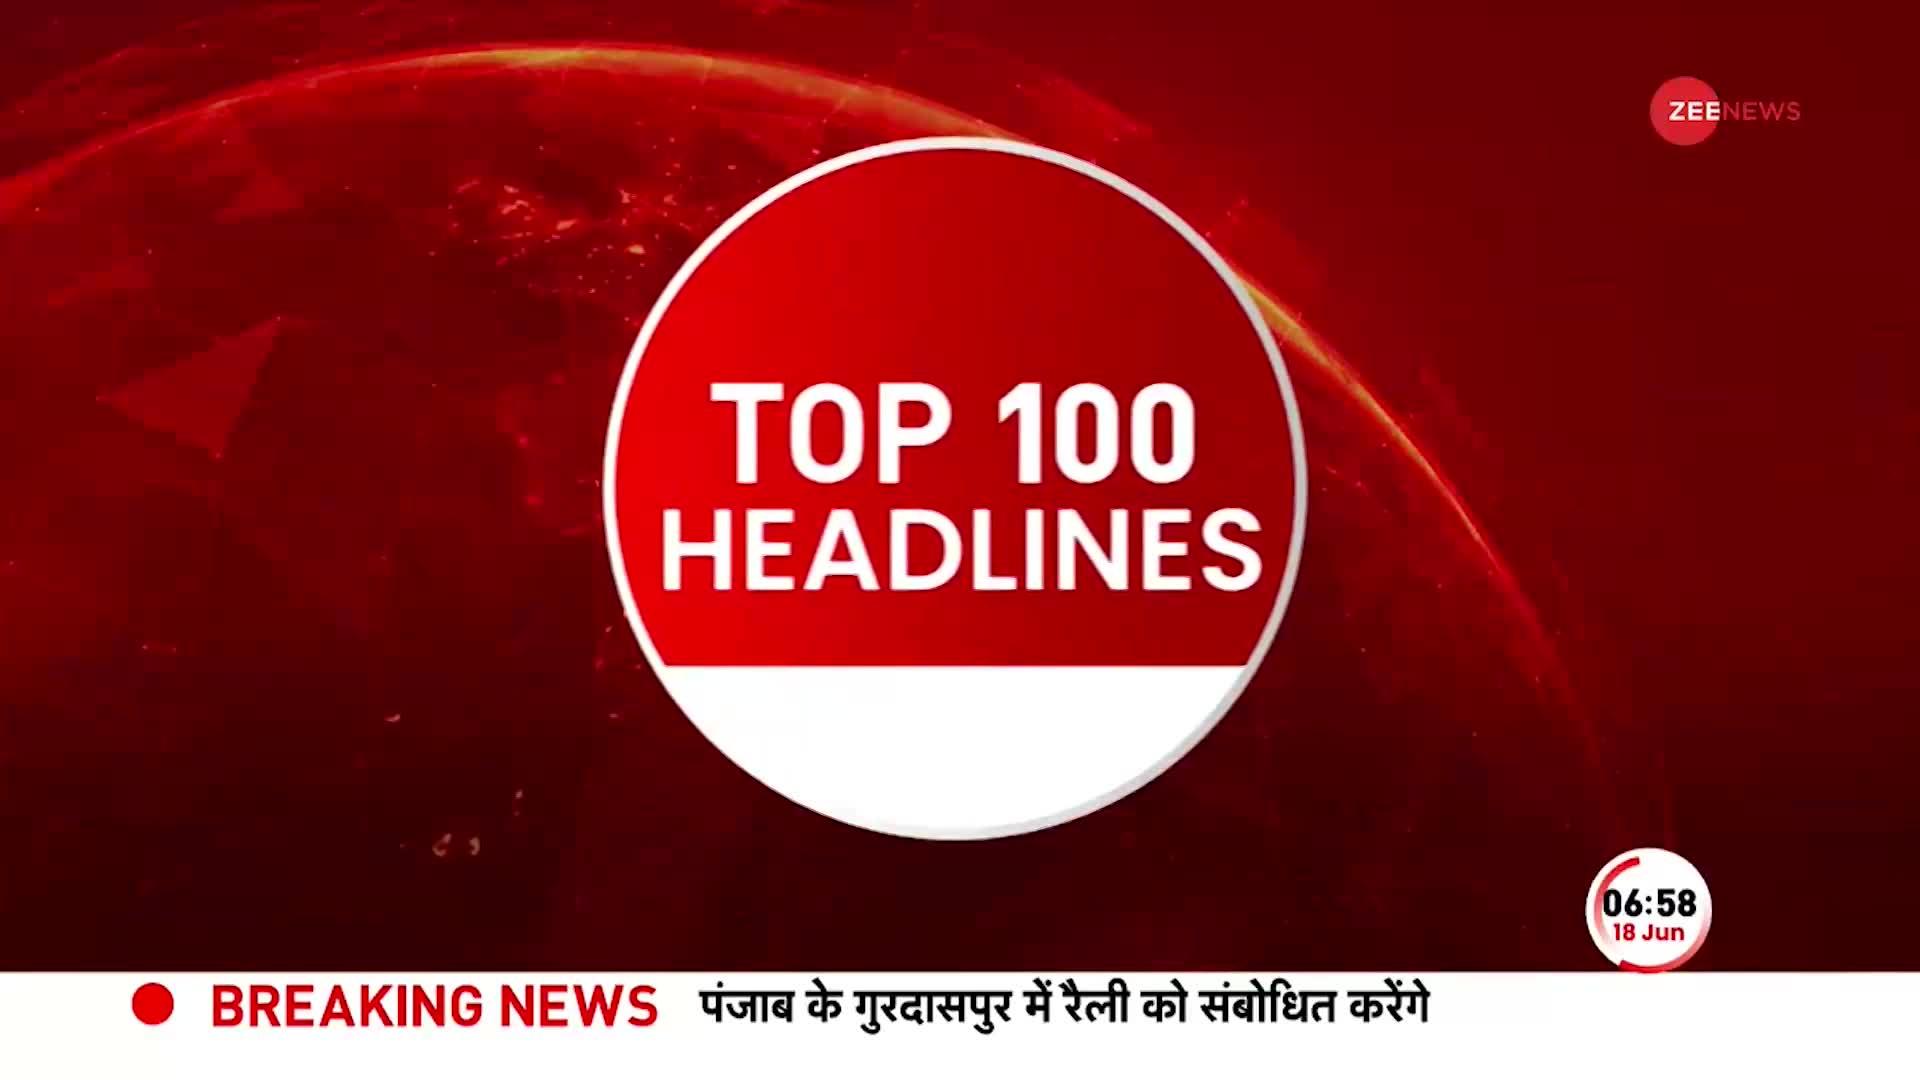 TOP 100: सुबह की 100 बड़ी खबरें सुपरफास्ट अंदाज में | Ajit Doval  | Subhash Chandra Bose